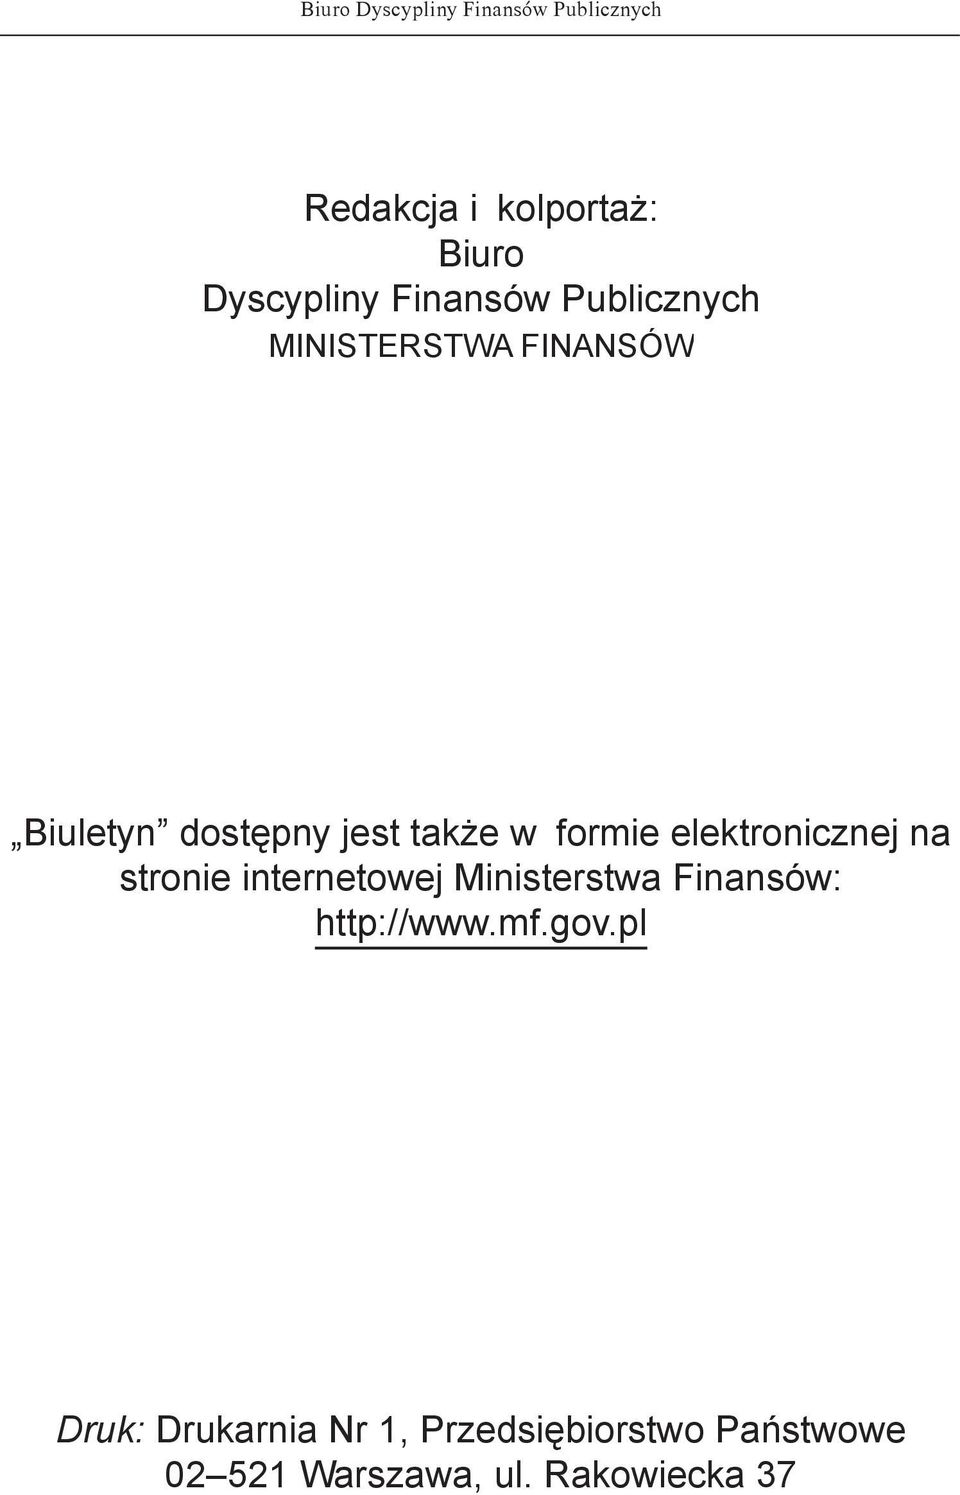 elektronicznej na stronie internetowej Ministerstwa Finansów: http://www.mf.gov.